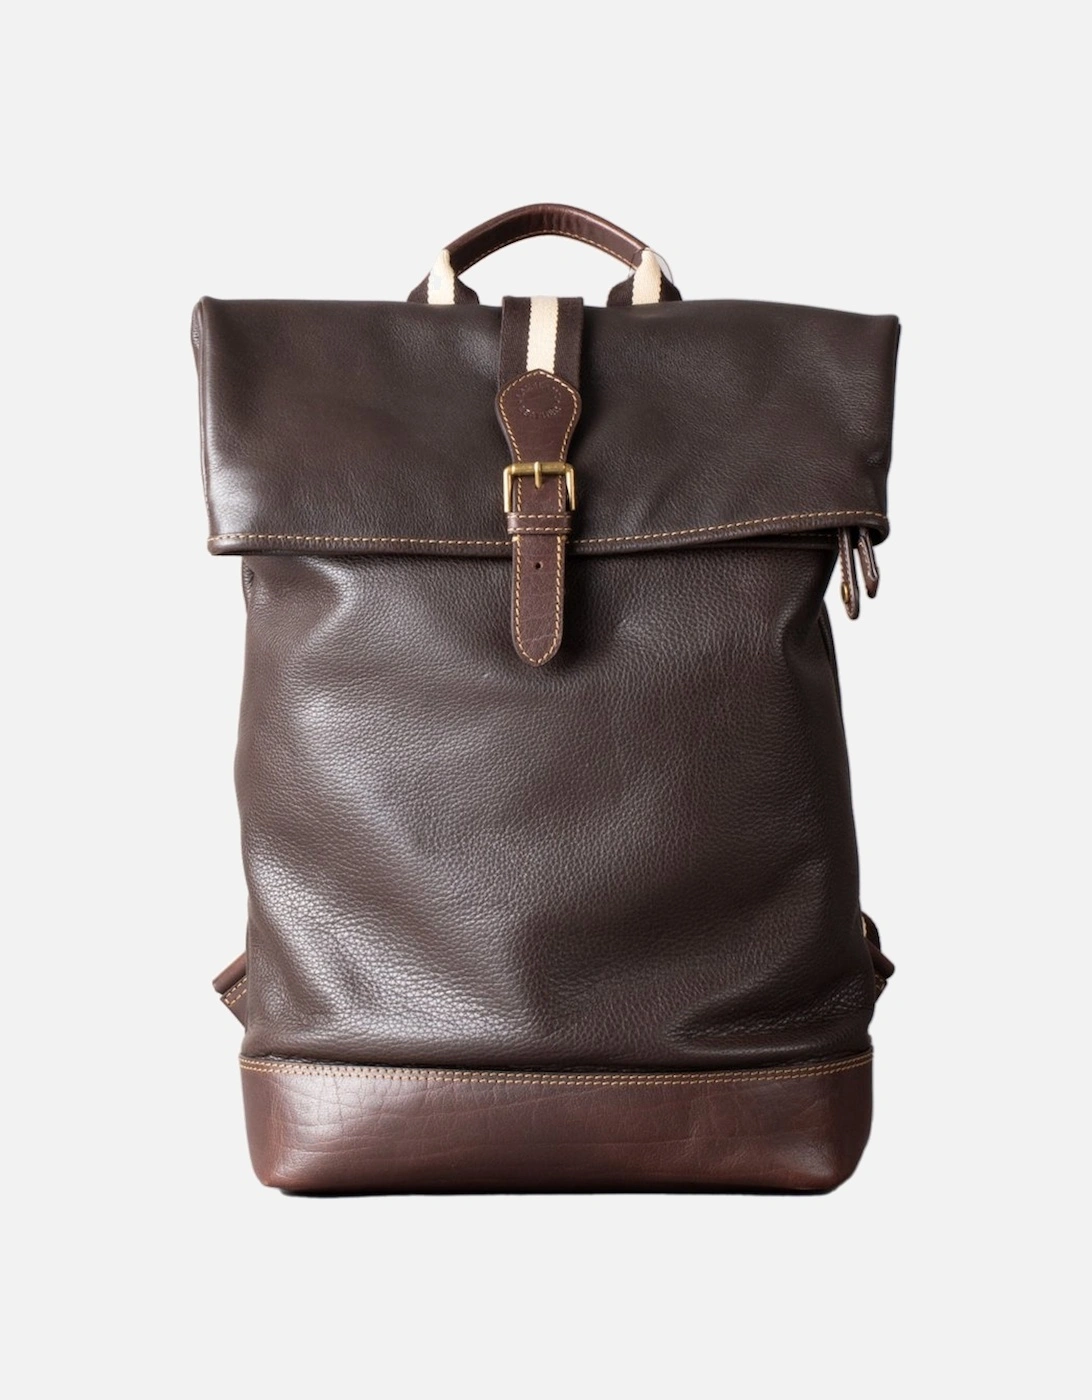 Kelsick Leather Rolltop Backpack